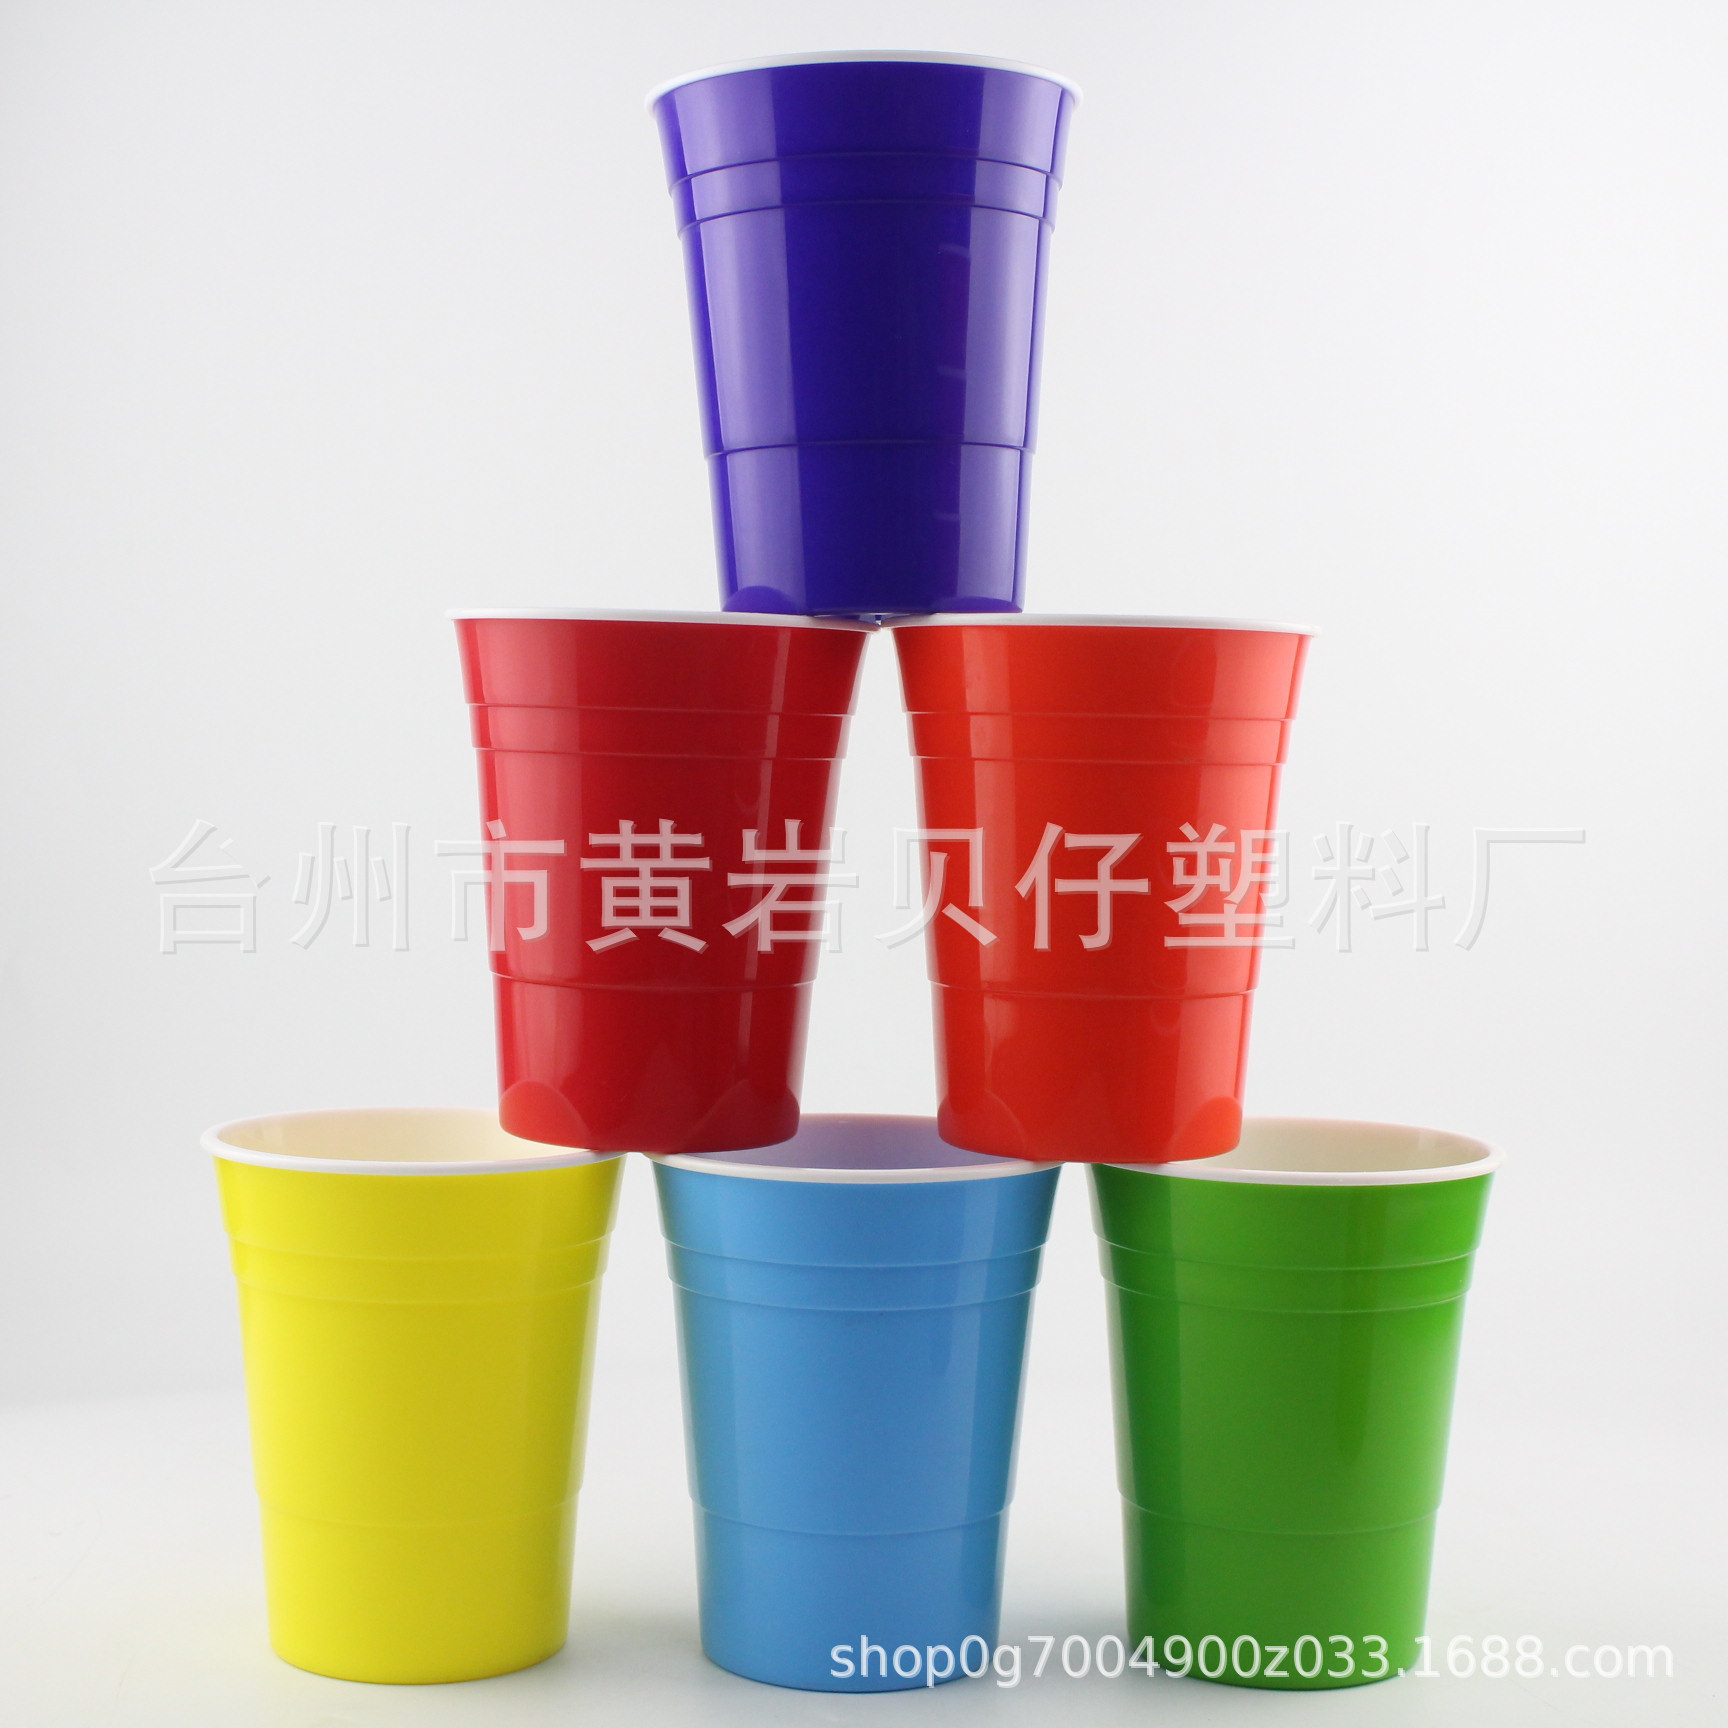 新款杯子厂家注塑杯 彩色创意SOLO杯 带LOGO水杯游戏派对